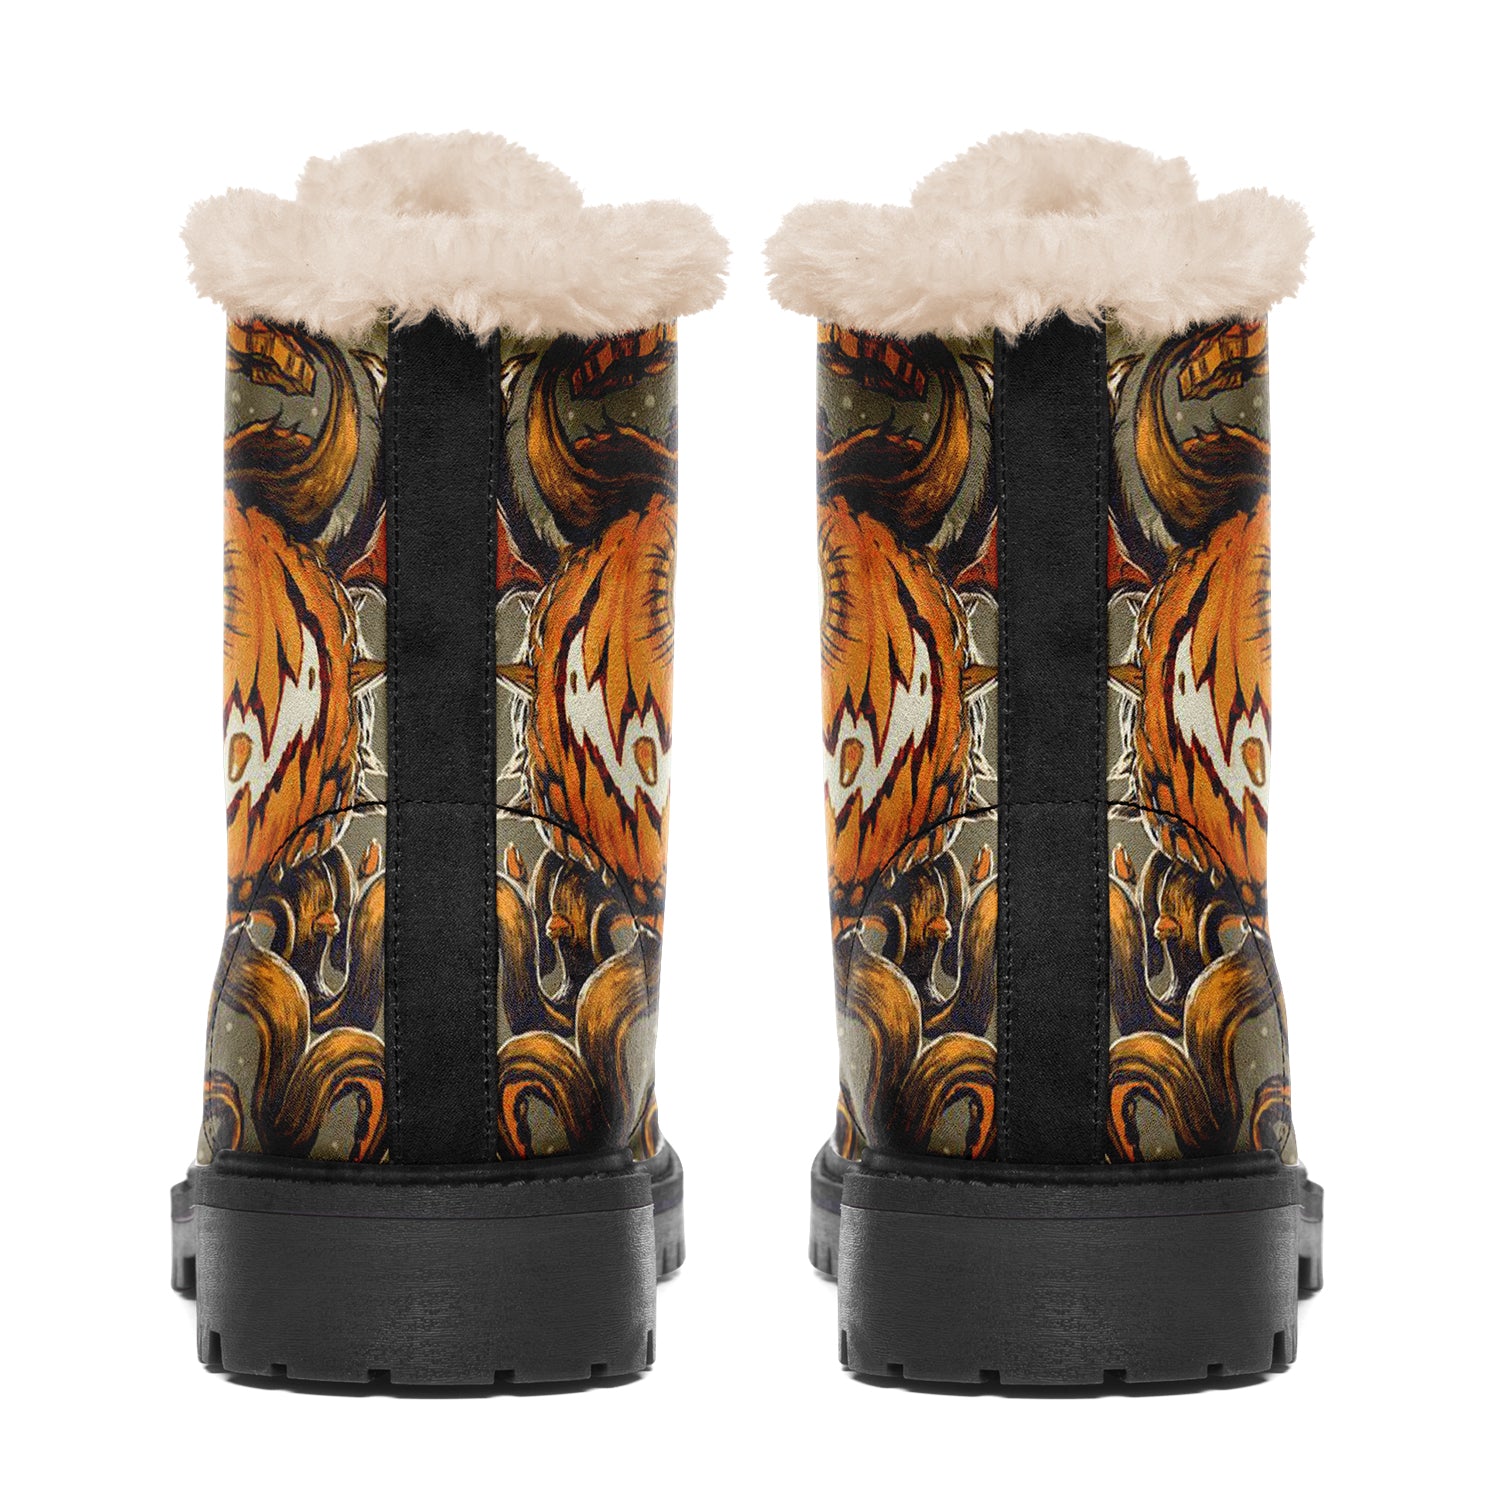  Winter Snow Boots Waterproof 